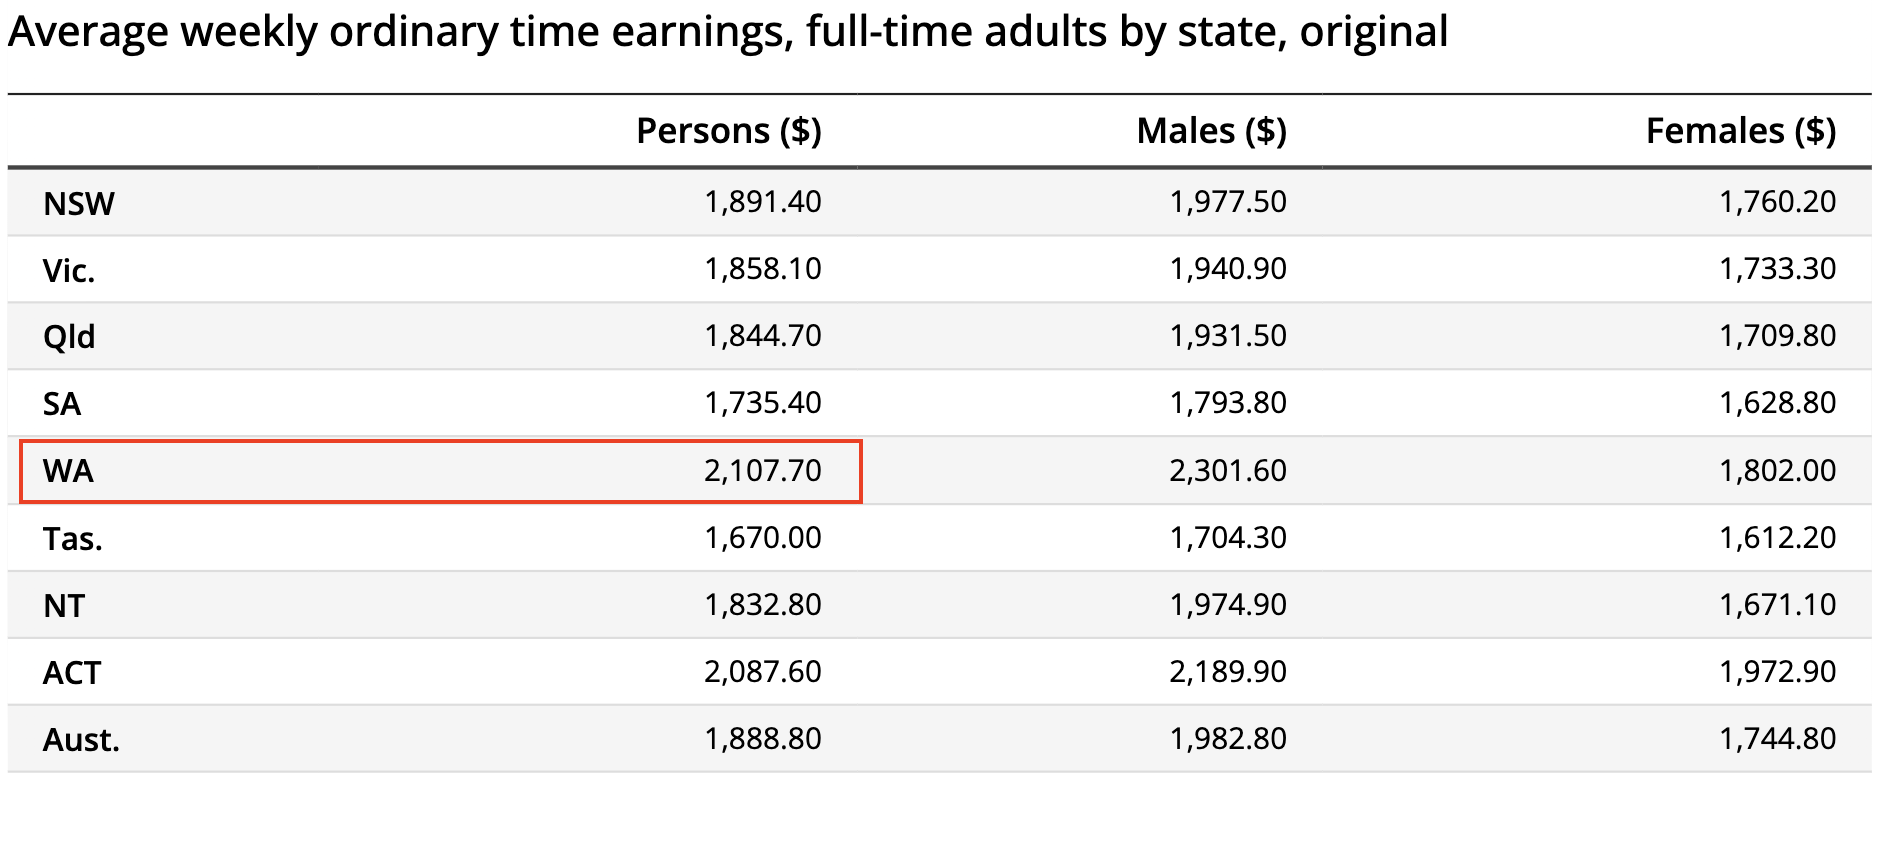 西澳大學位於西澳州，與其他地區比較，平均全職收入最高。